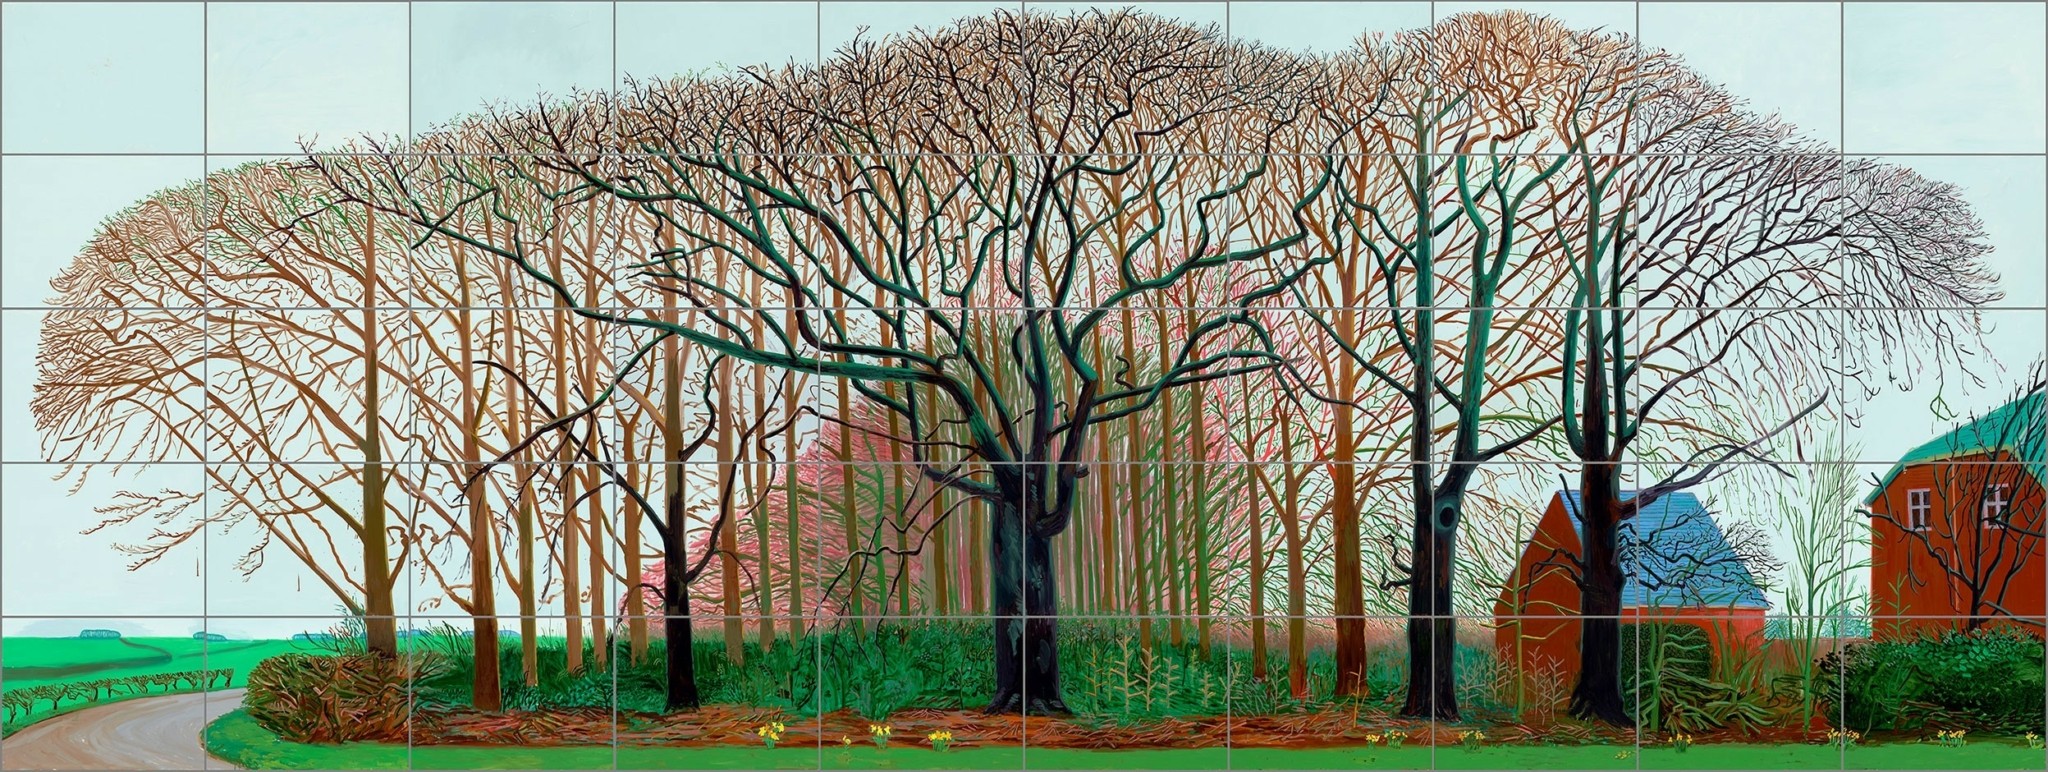 Το μεγαλειώδες art-show του David Hockney στο Λονδίνο